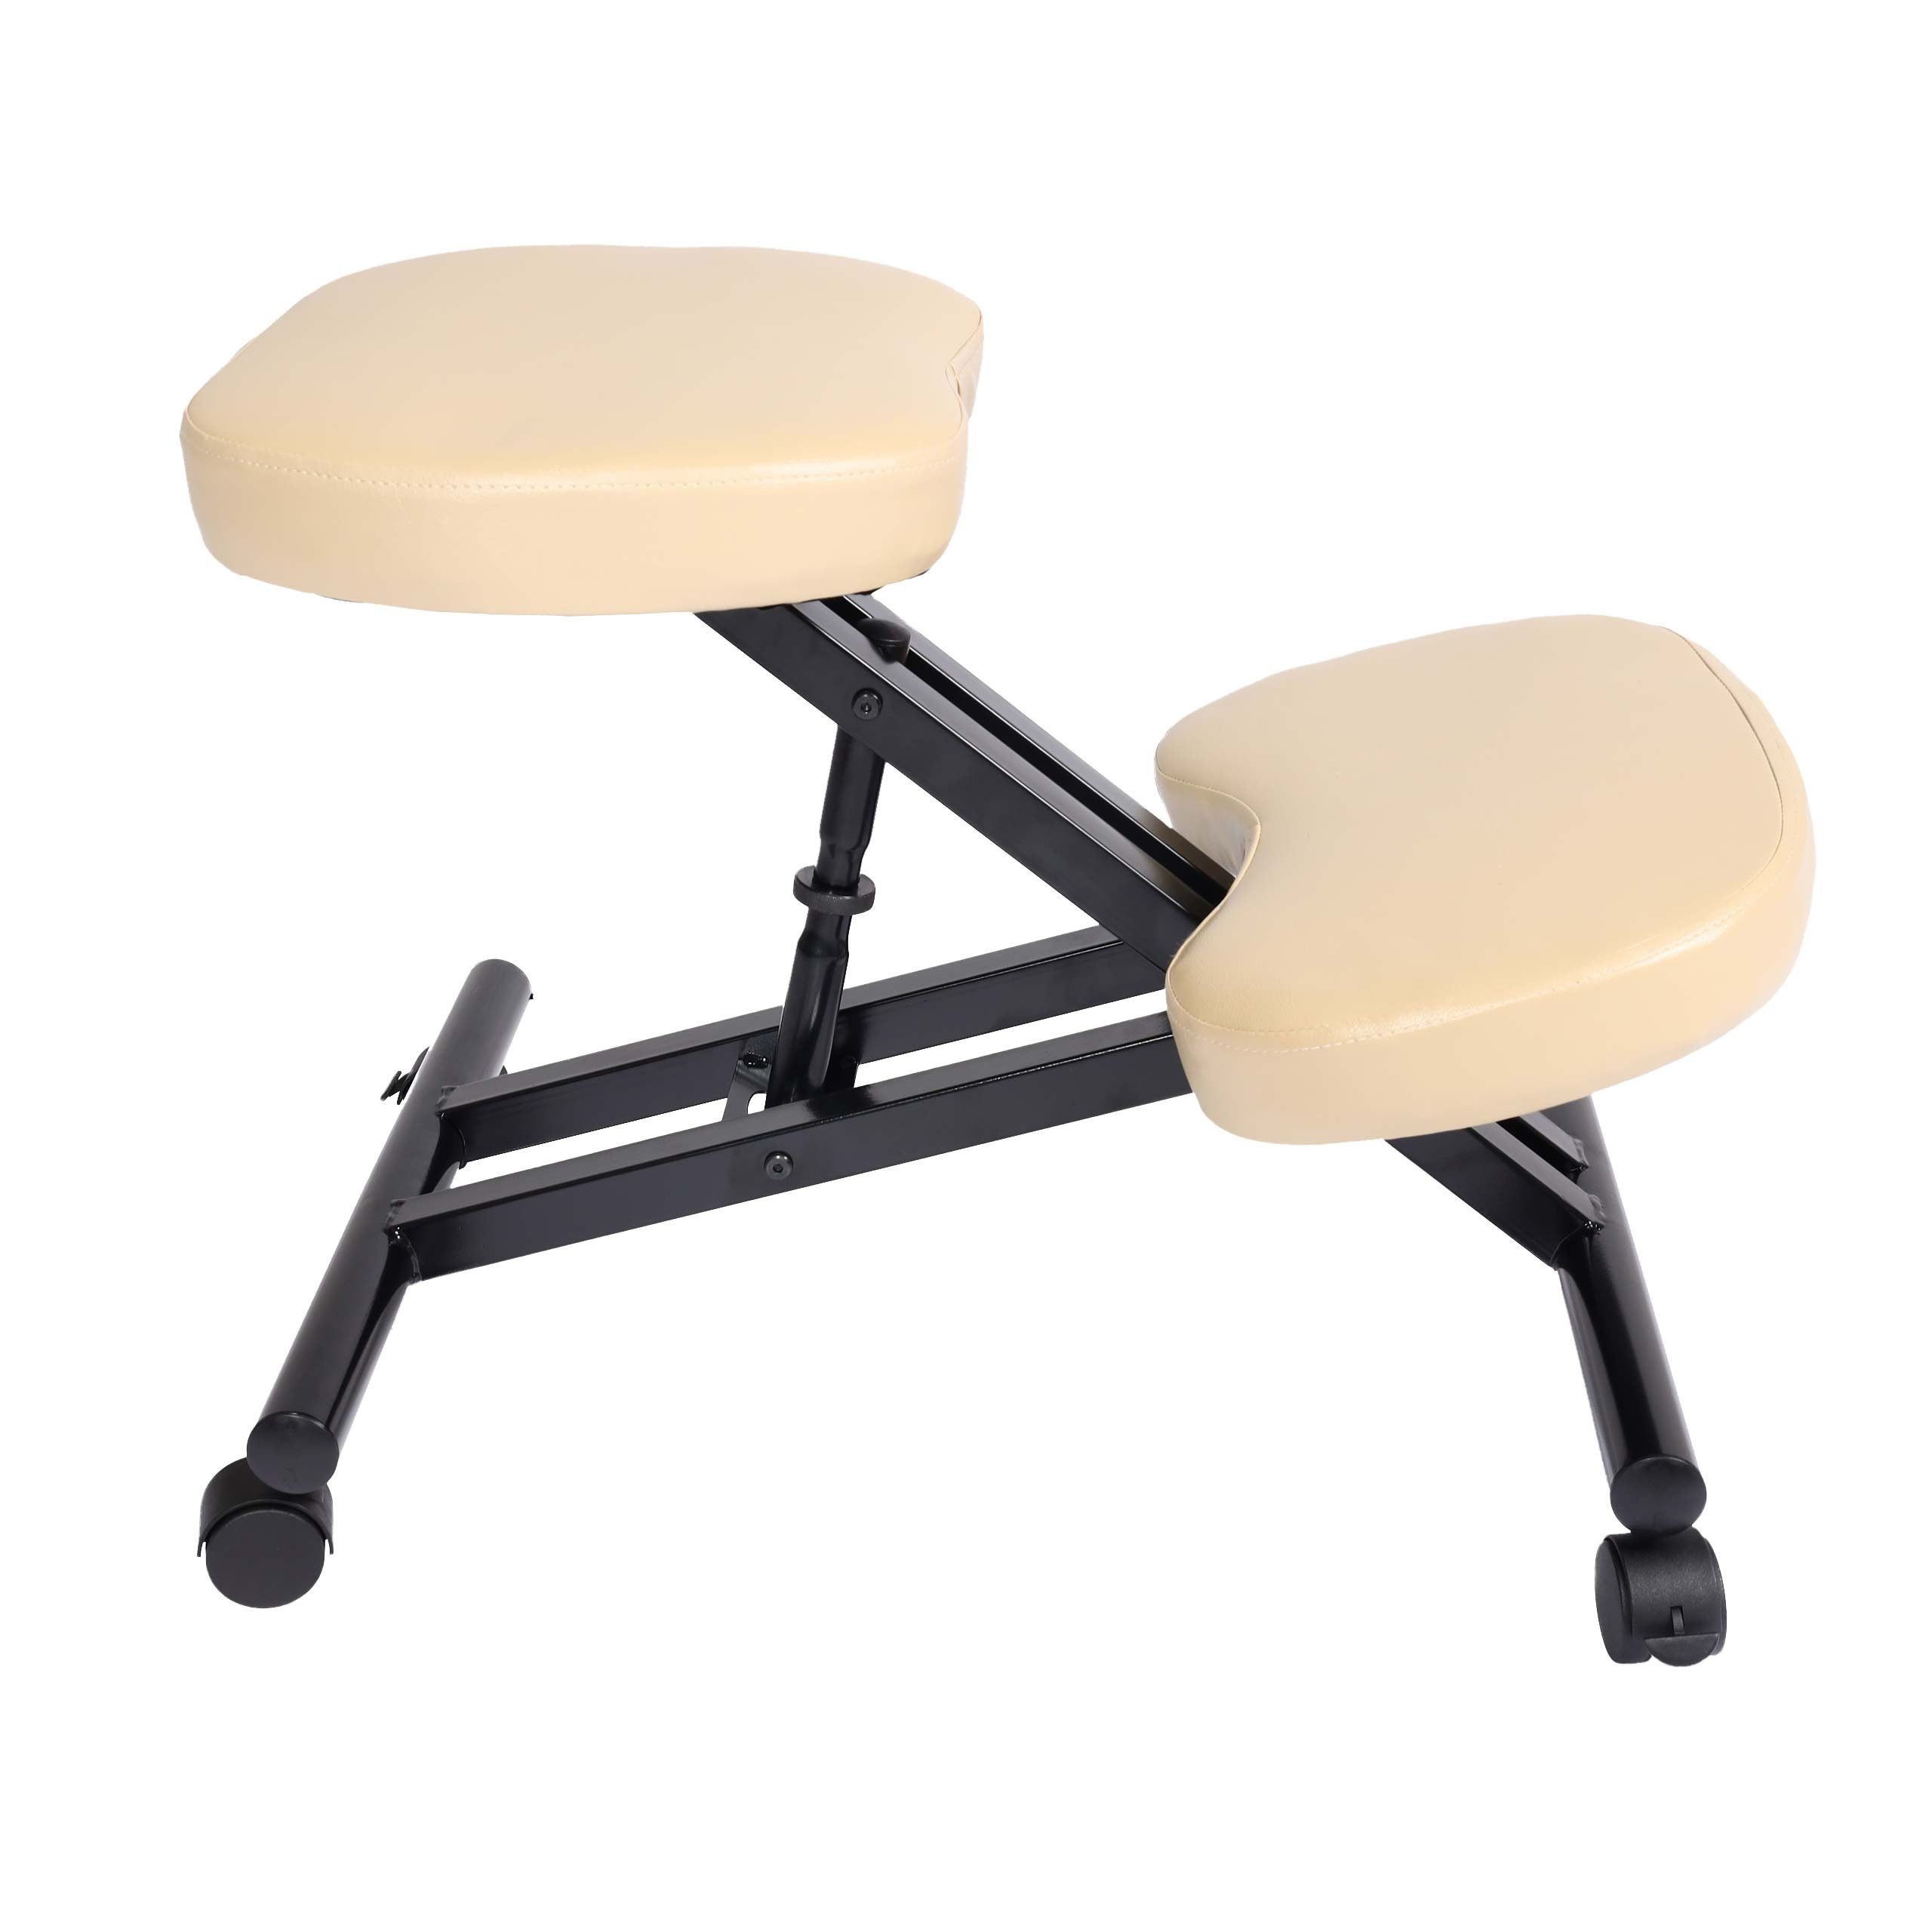 MCW Schreibtischstuhl MCW-E10, Höhenverstellbare Sitzfläche, Weich gepolsterte Knie- und Sitzfläche